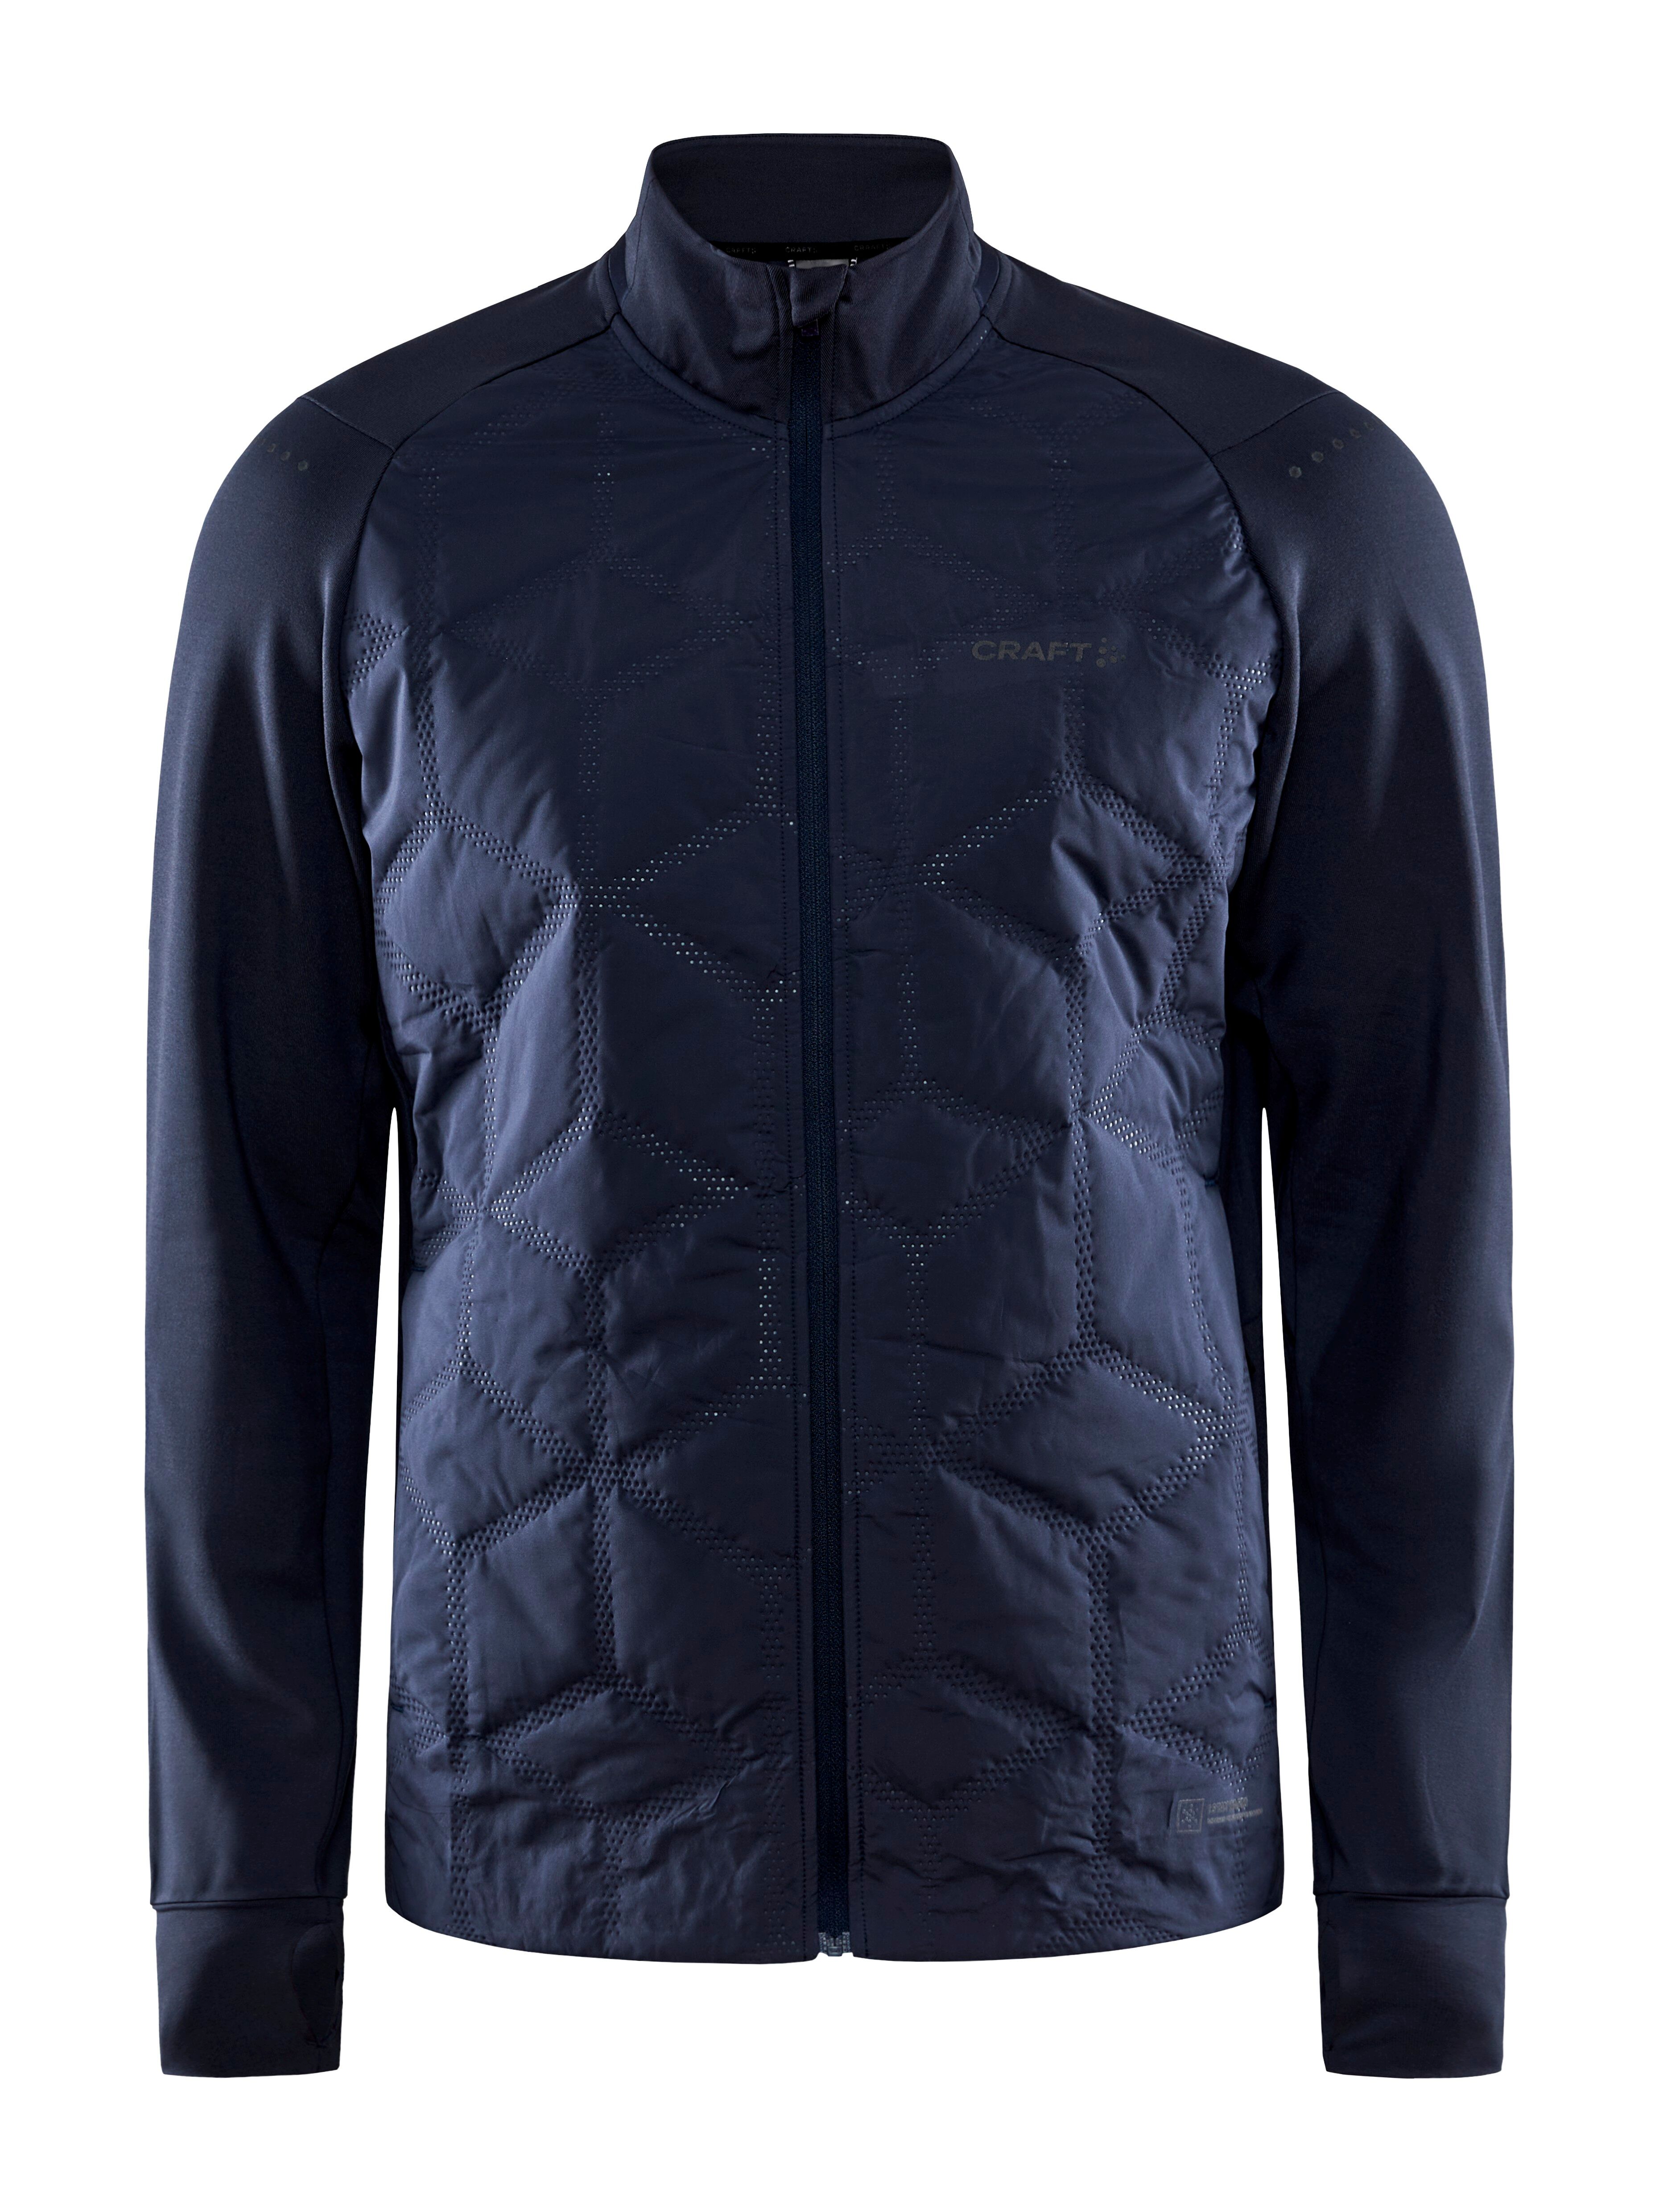 Craft Adv Subz Jacket 2 - Windproof jacket - Men's